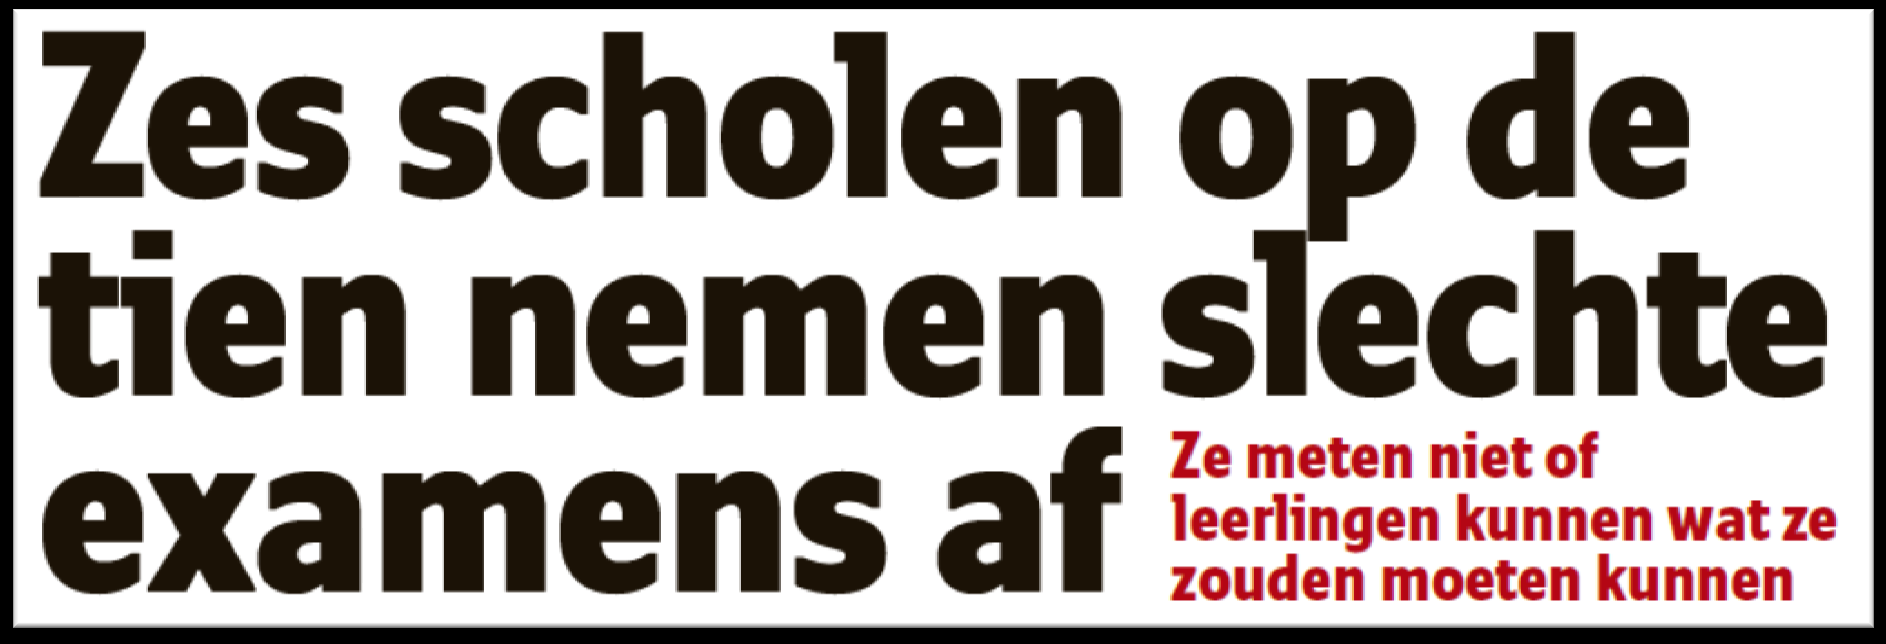 Het Nieuwsblad 23 april 2014 Cf.